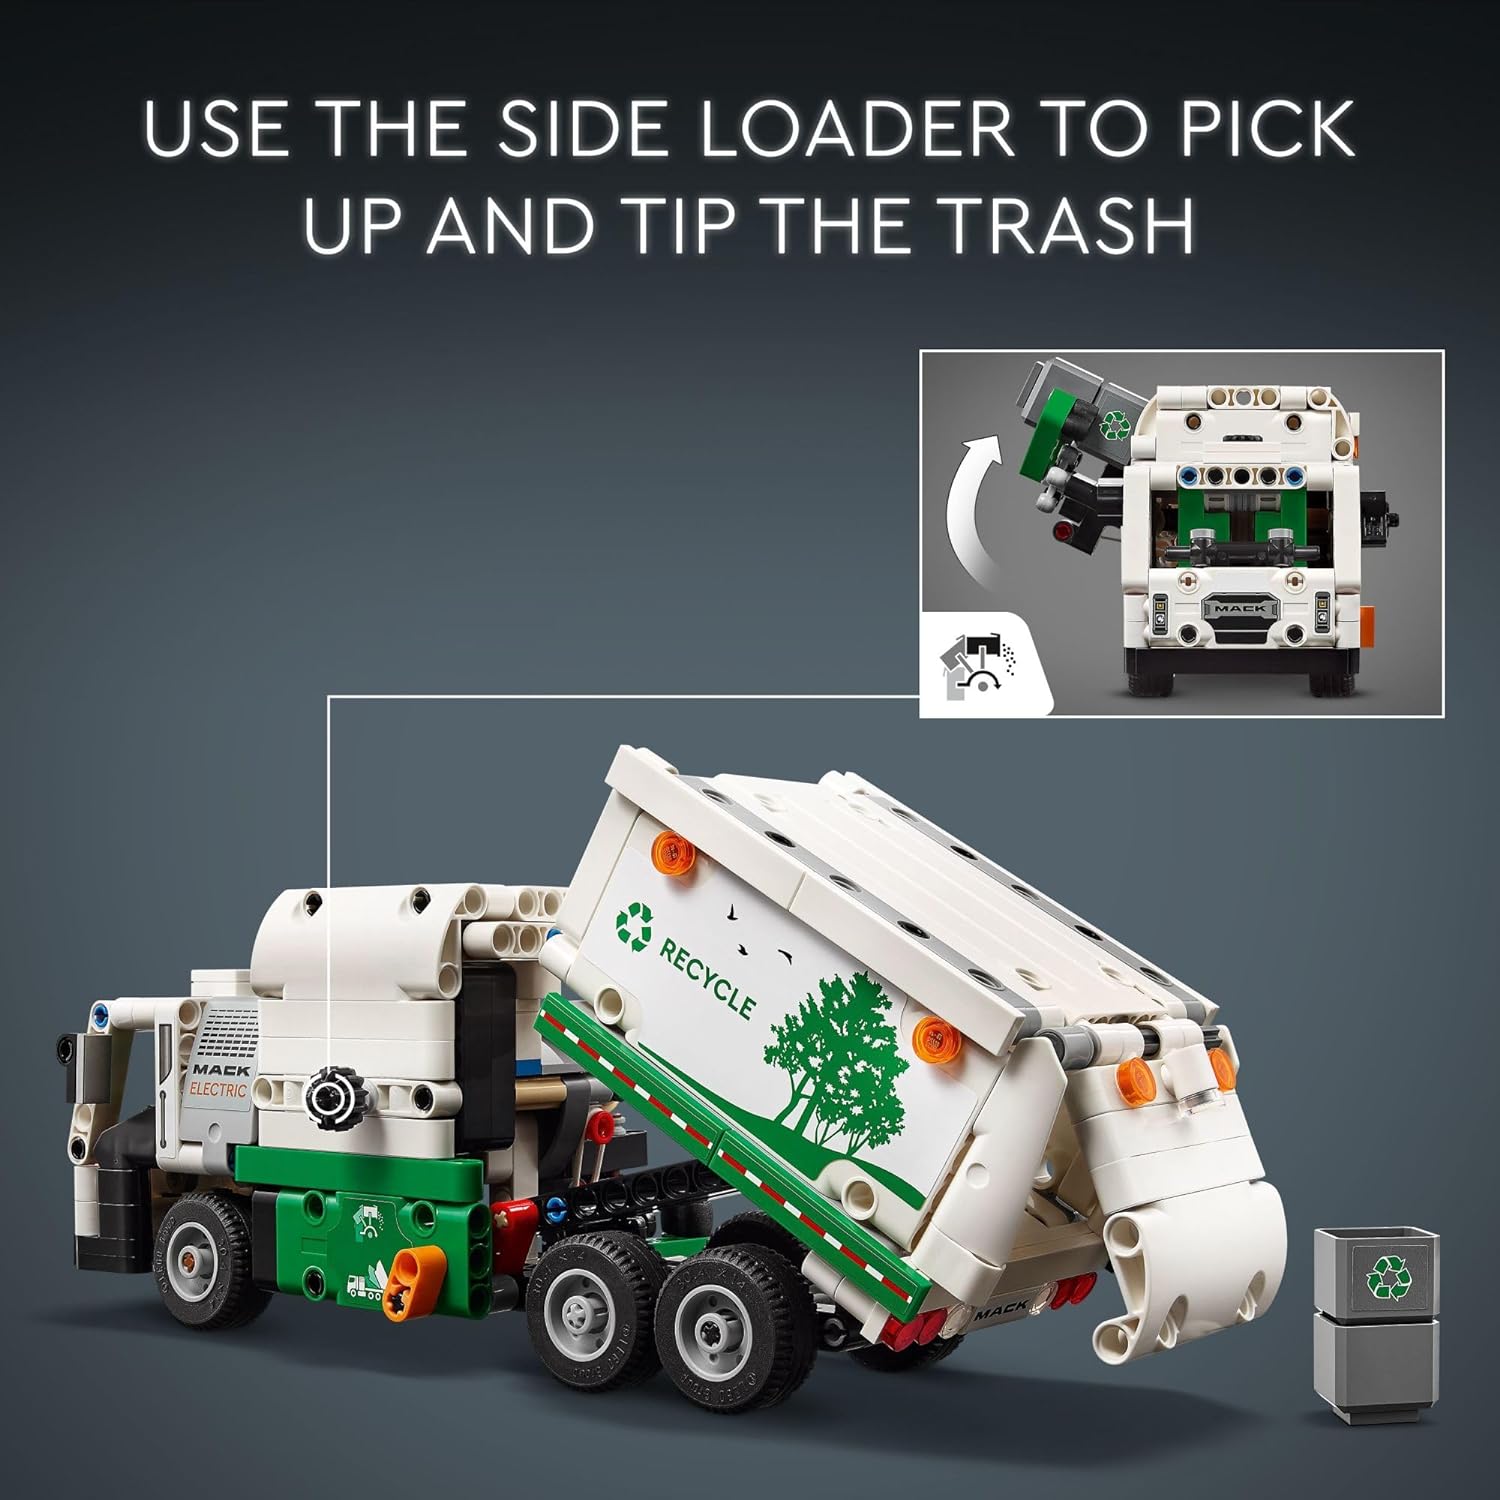 لعبة شاحنة القمامة الكهربائية تكنيك ماك LR من ليجو 42167، شاحنة أطفال قابلة للبناء للعب التظاهري.